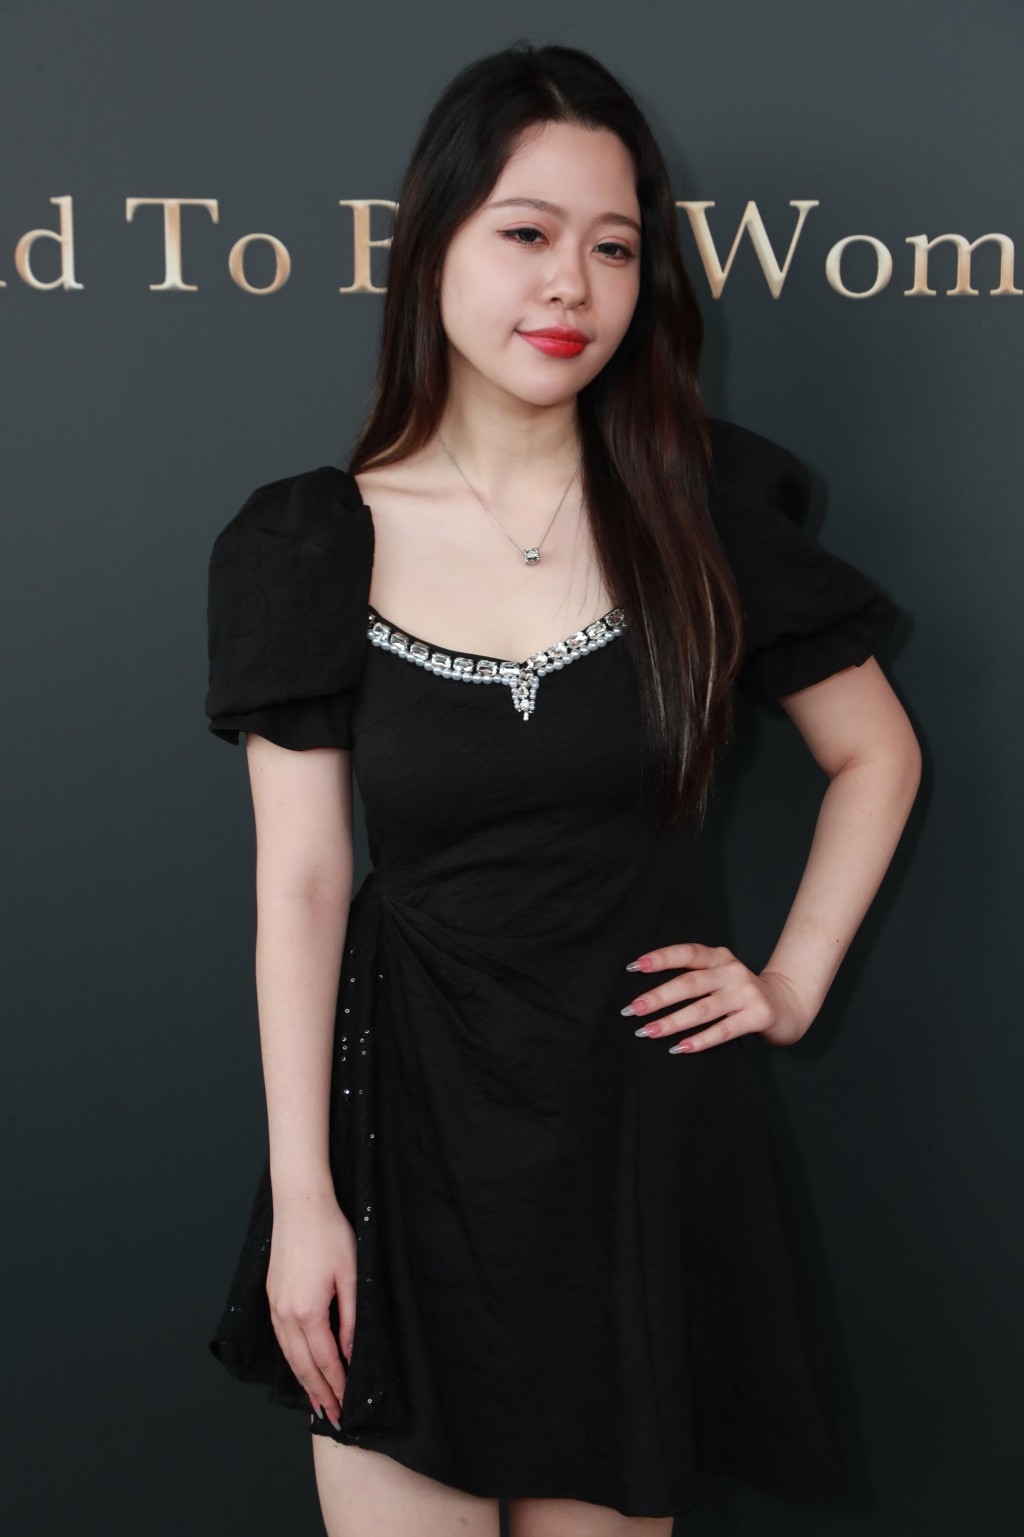 现年26岁的Tiffany，在澳洲读酒店管理，今次从上海回港参选，准备表演唱歌，为选港姐减了4公斤。